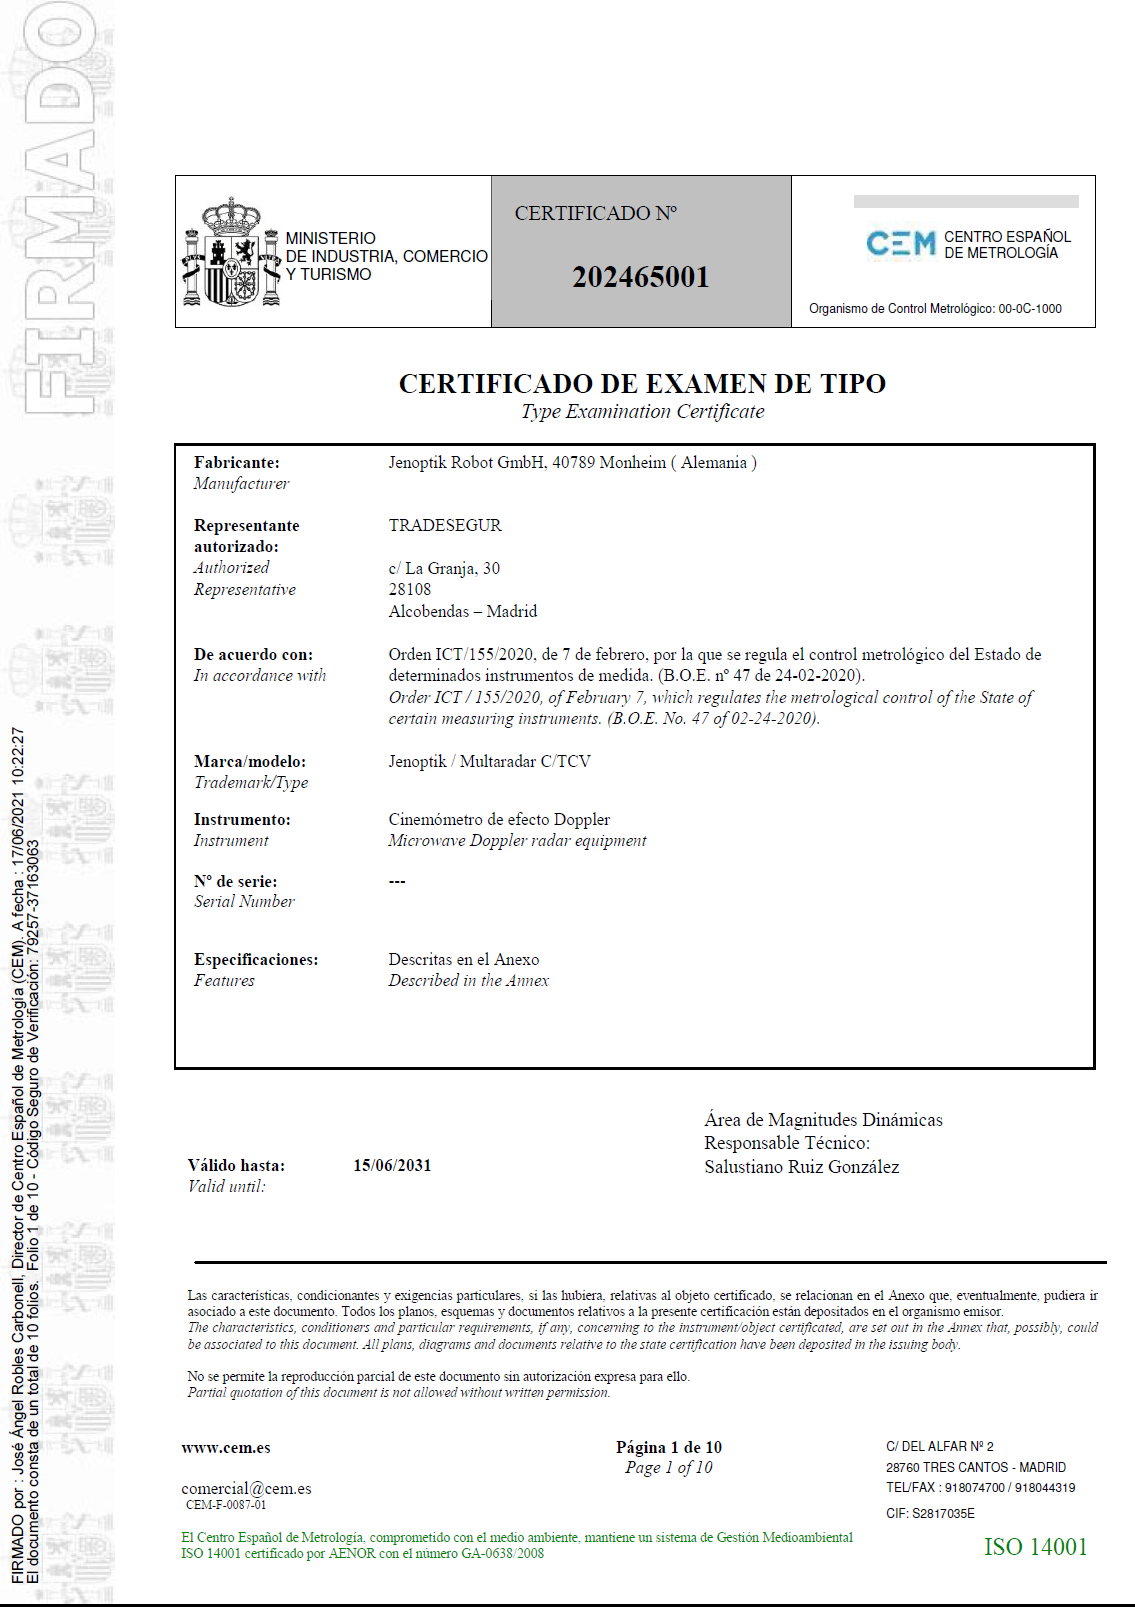 Certificado de examen de tipo nº 202465001